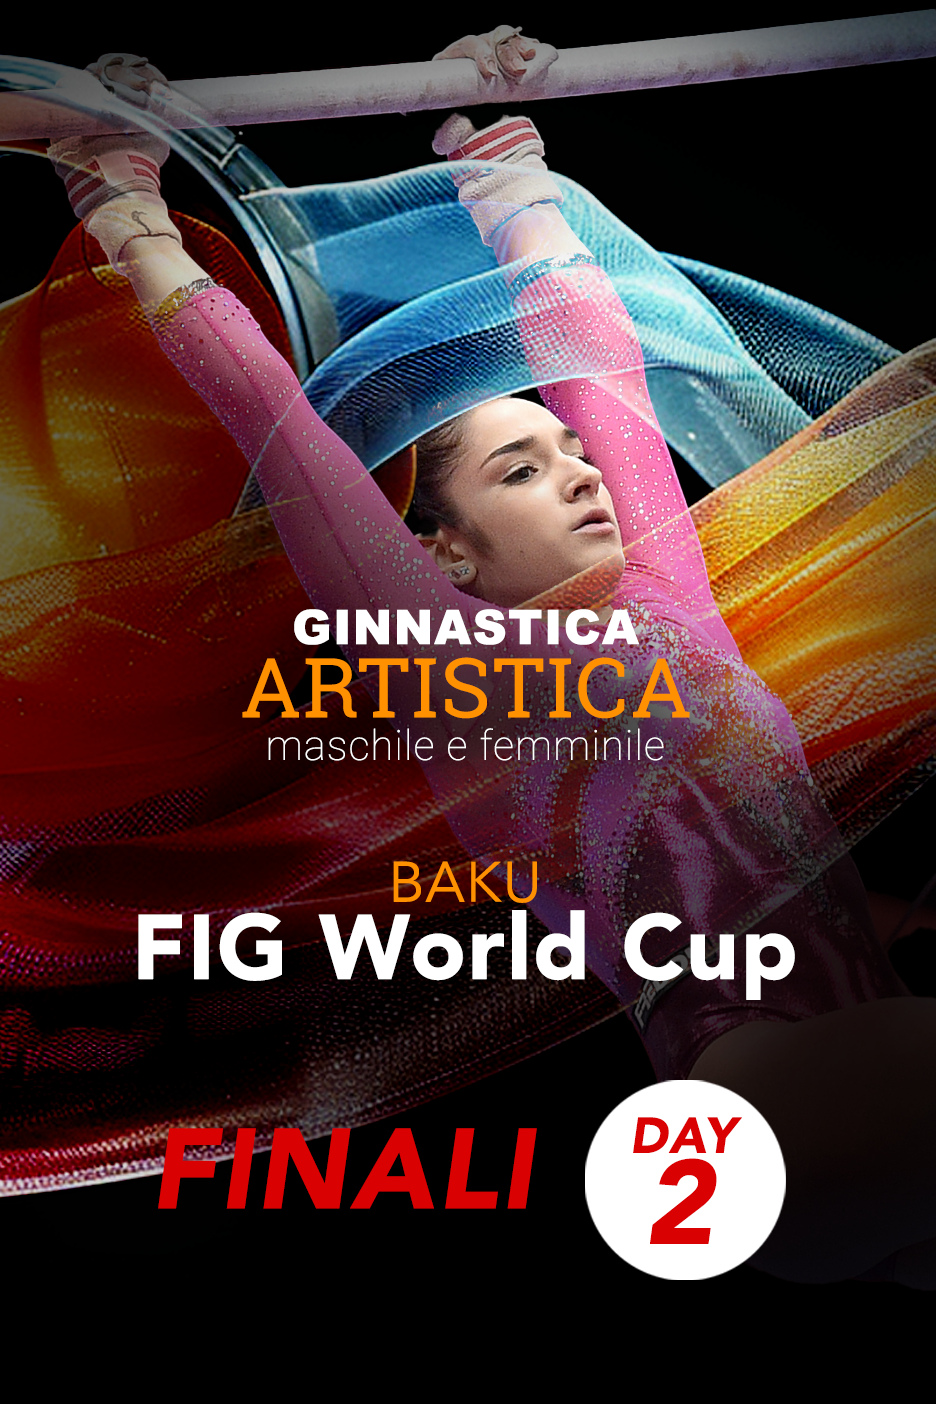 BAKU - FIG World Cup– Finals Day 2